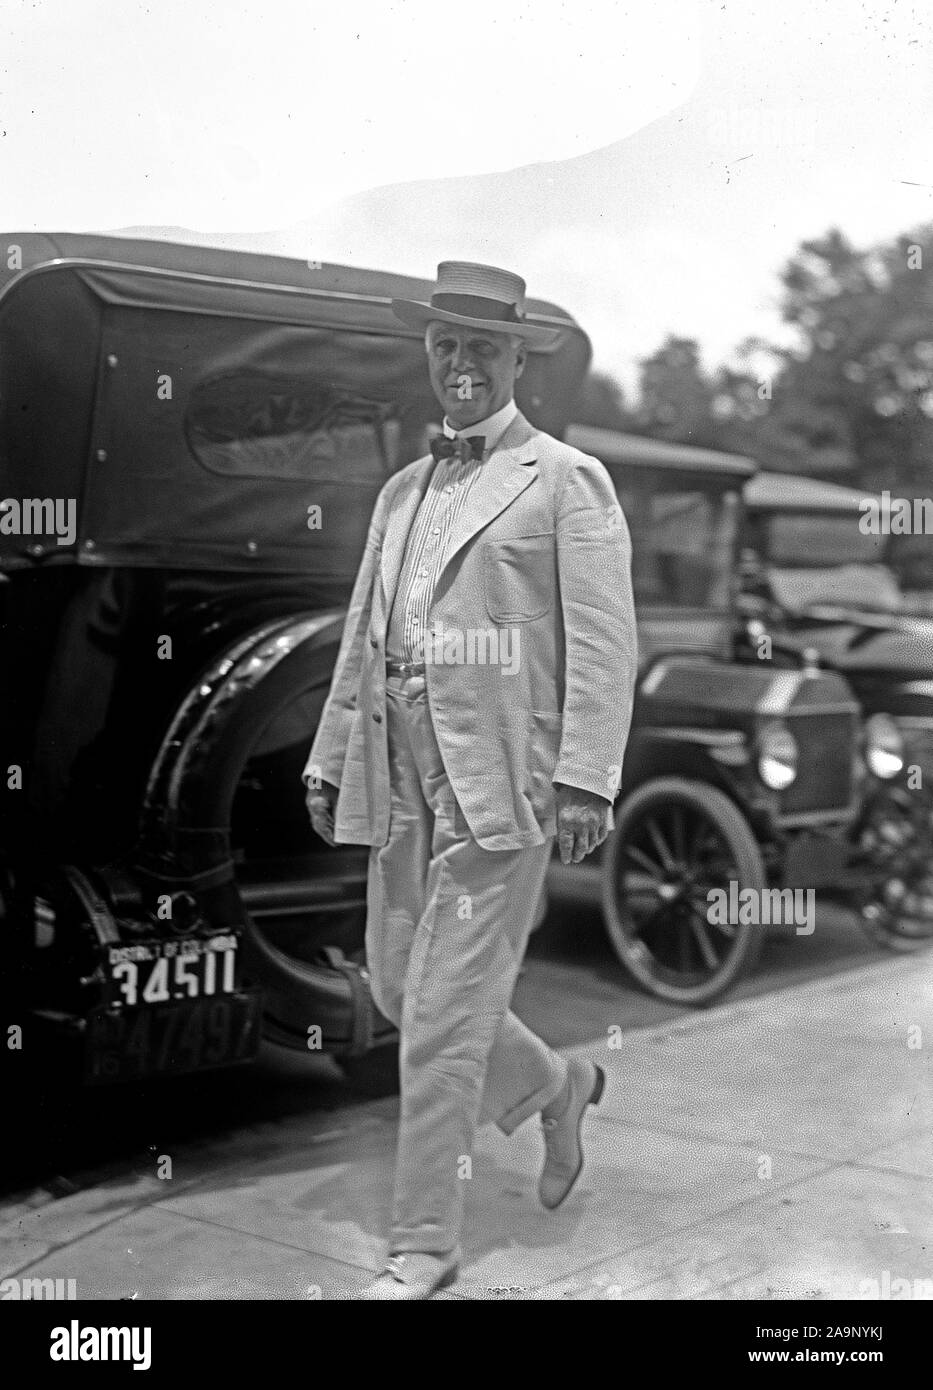 Début des années 1900, les politiciens américains - Le Sénateur Thomas Taggart ca marche à l'extérieur. 1910-1917 Banque D'Images